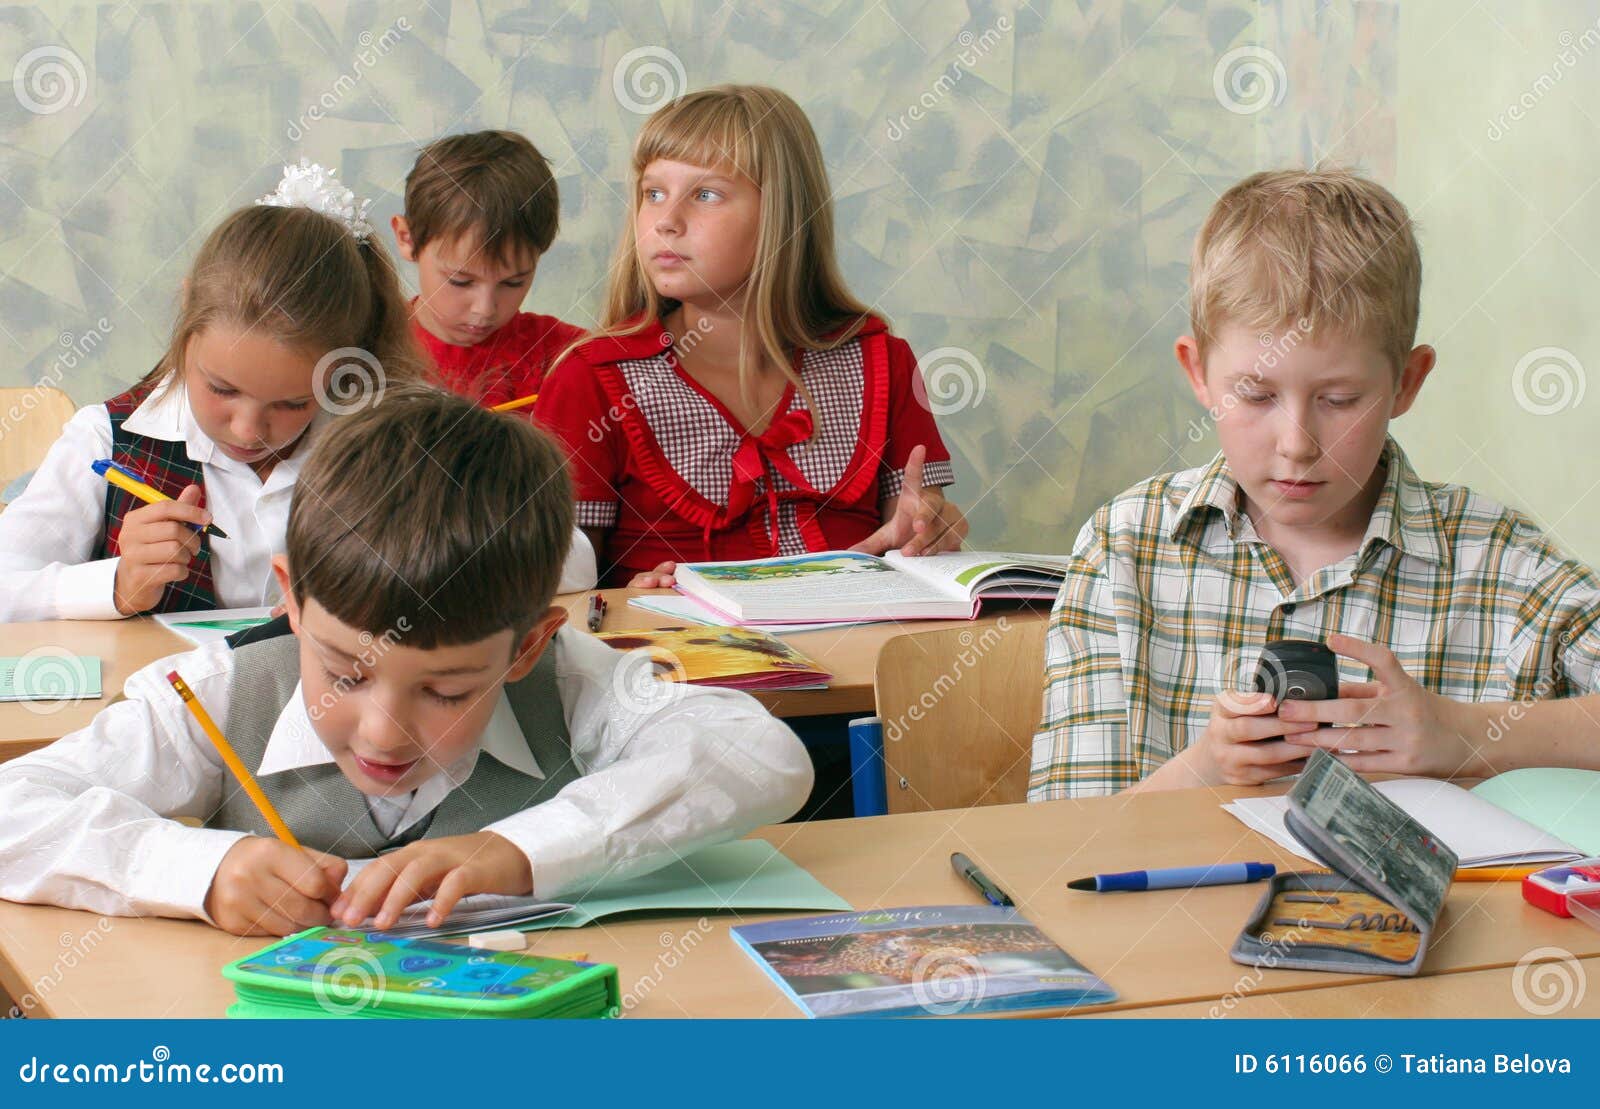 Играет в телефон на уроке. Дети на уроке. Дети в школе отвлекаются. Ребенок отвлекается на уроке. Дети с мобильниками в школе.